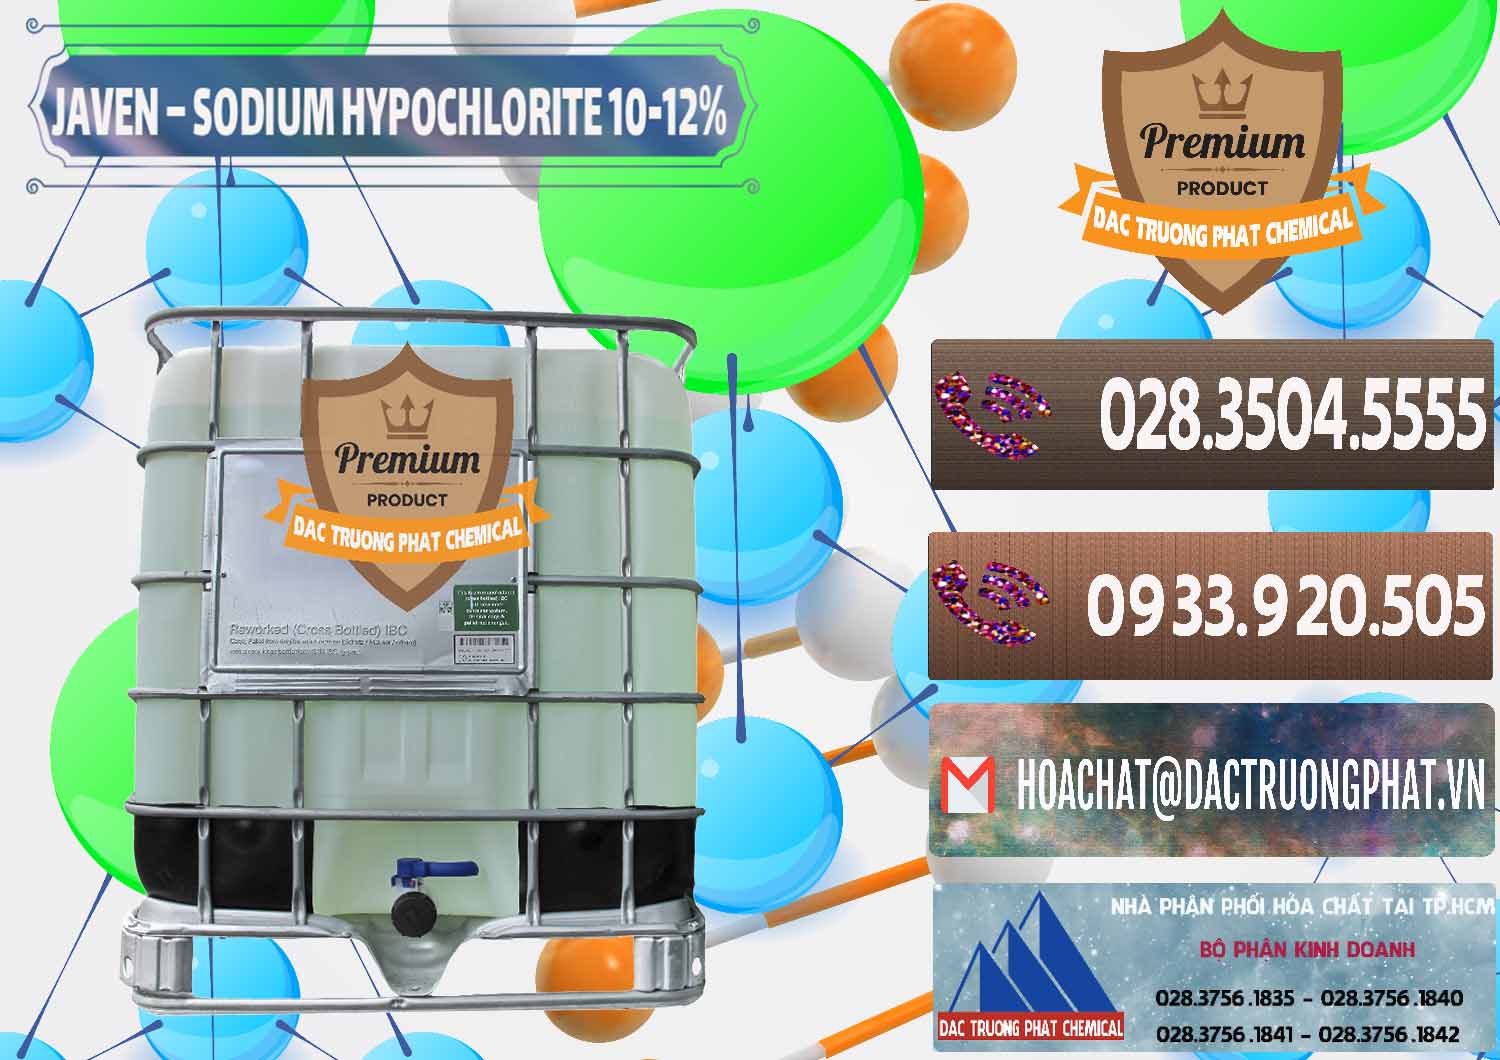 Chuyên kinh doanh & cung cấp Javen - Sodium Hypochlorite 10-12% Việt Nam - 0188 - Nhà phân phối và bán hóa chất tại TP.HCM - hoachatviet.net